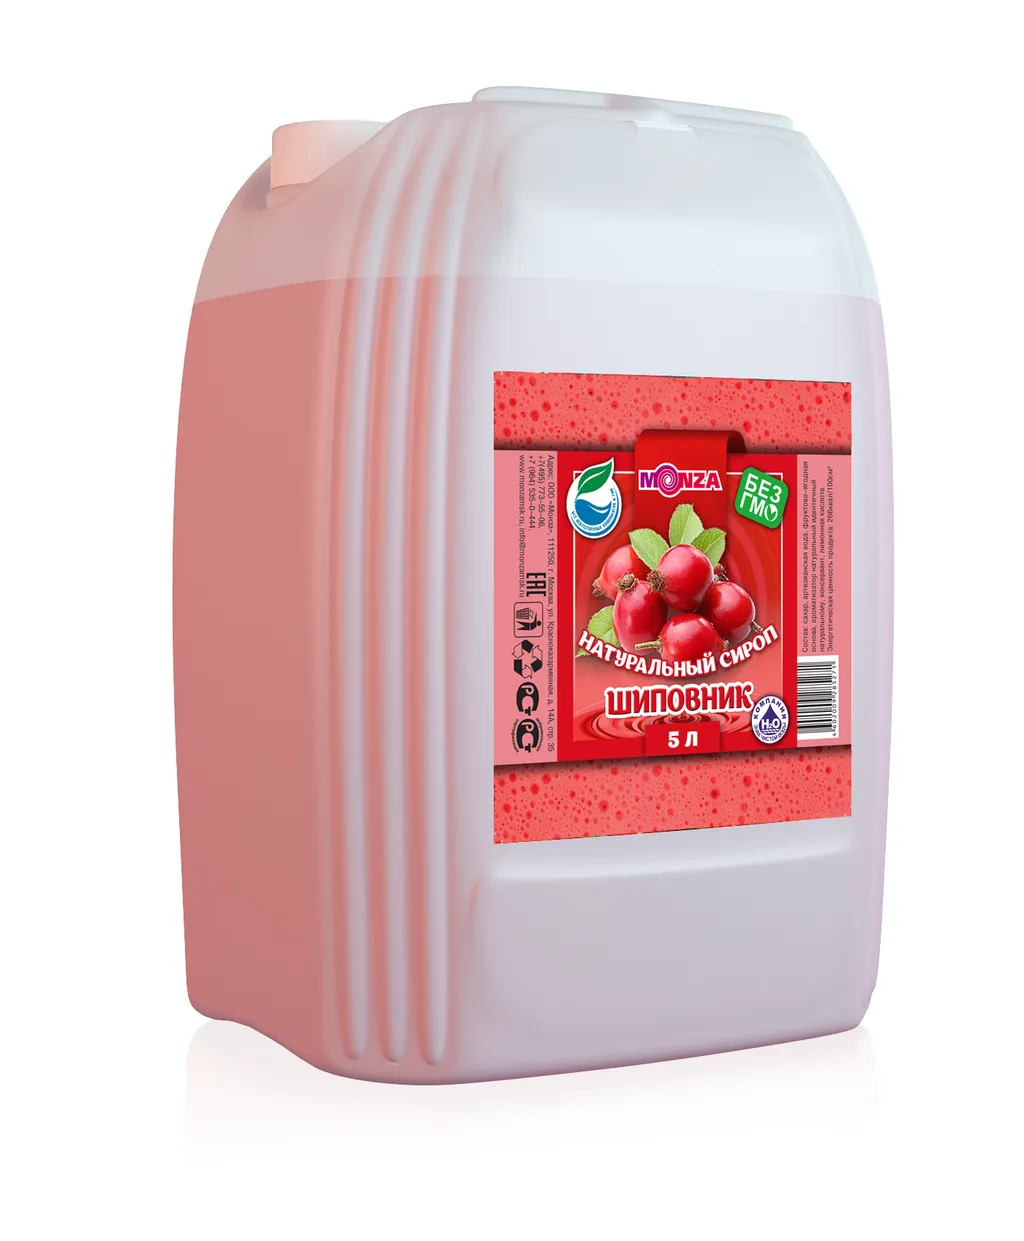 Фотография продукта Фруктово-ягодные сиропы оптом